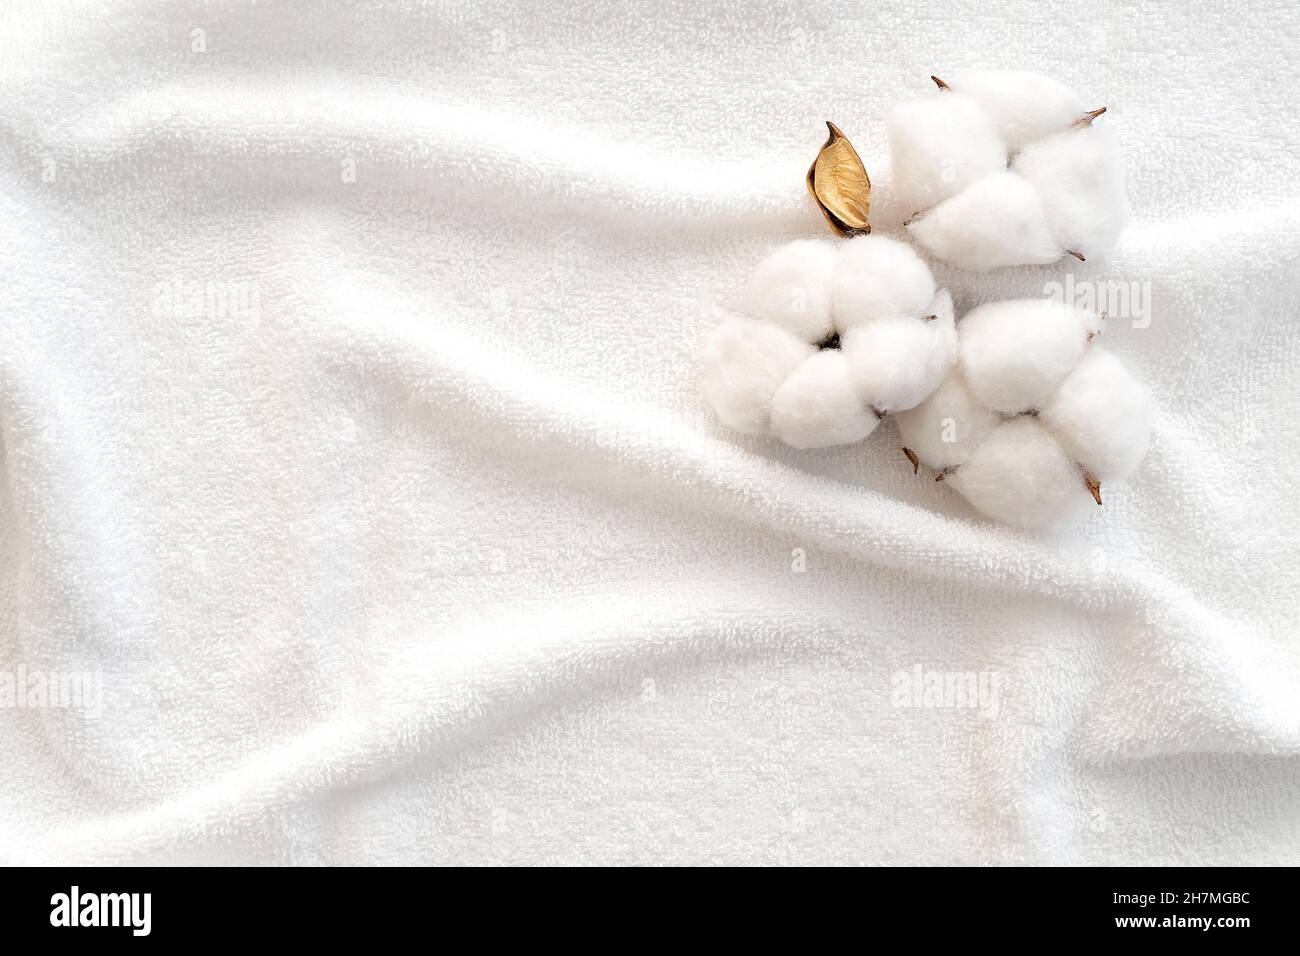 Baumwollblumen auf der Oberfläche eines weißen Frottee-Handtuchs. Handtuch als Textur oder Hintergrund reinigen. Draufsicht. Stockfoto